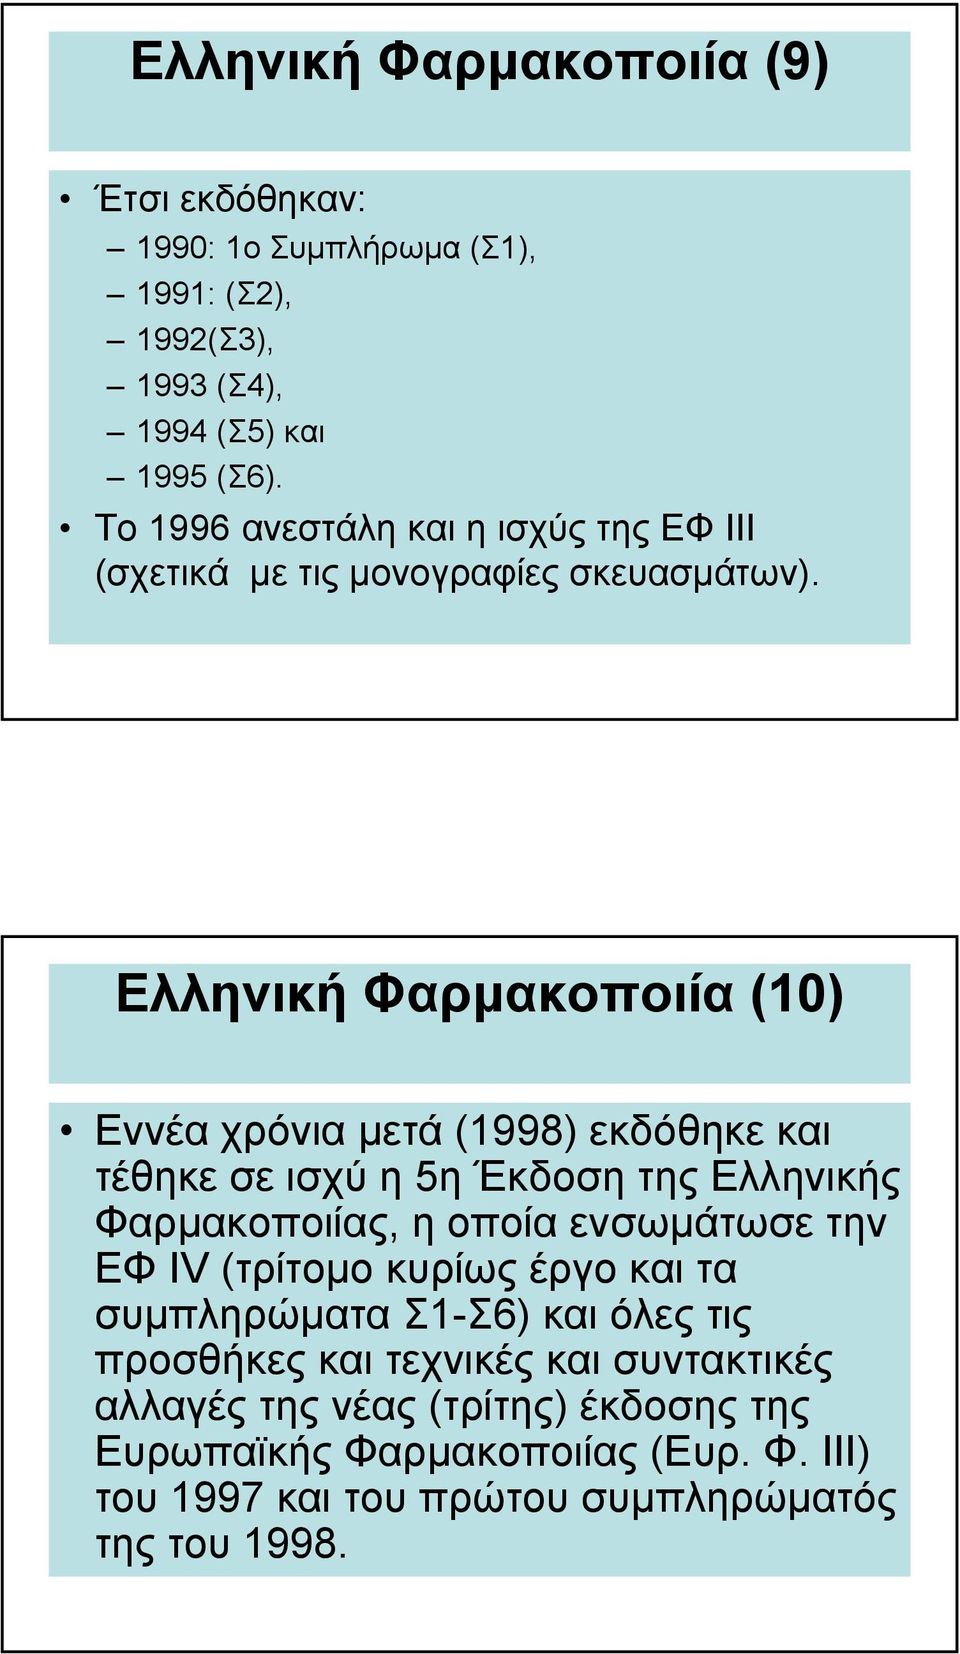 Ελληνική Φαρµακοποιία (10) Εννέα χρόνια µετά (1998) εκδόθηκε και τέθηκε σε ισχύ η 5η Έκδοση της Ελληνικής Φαρµακοποιίας, η οποία ενσωµάτωσε την ΕΦ